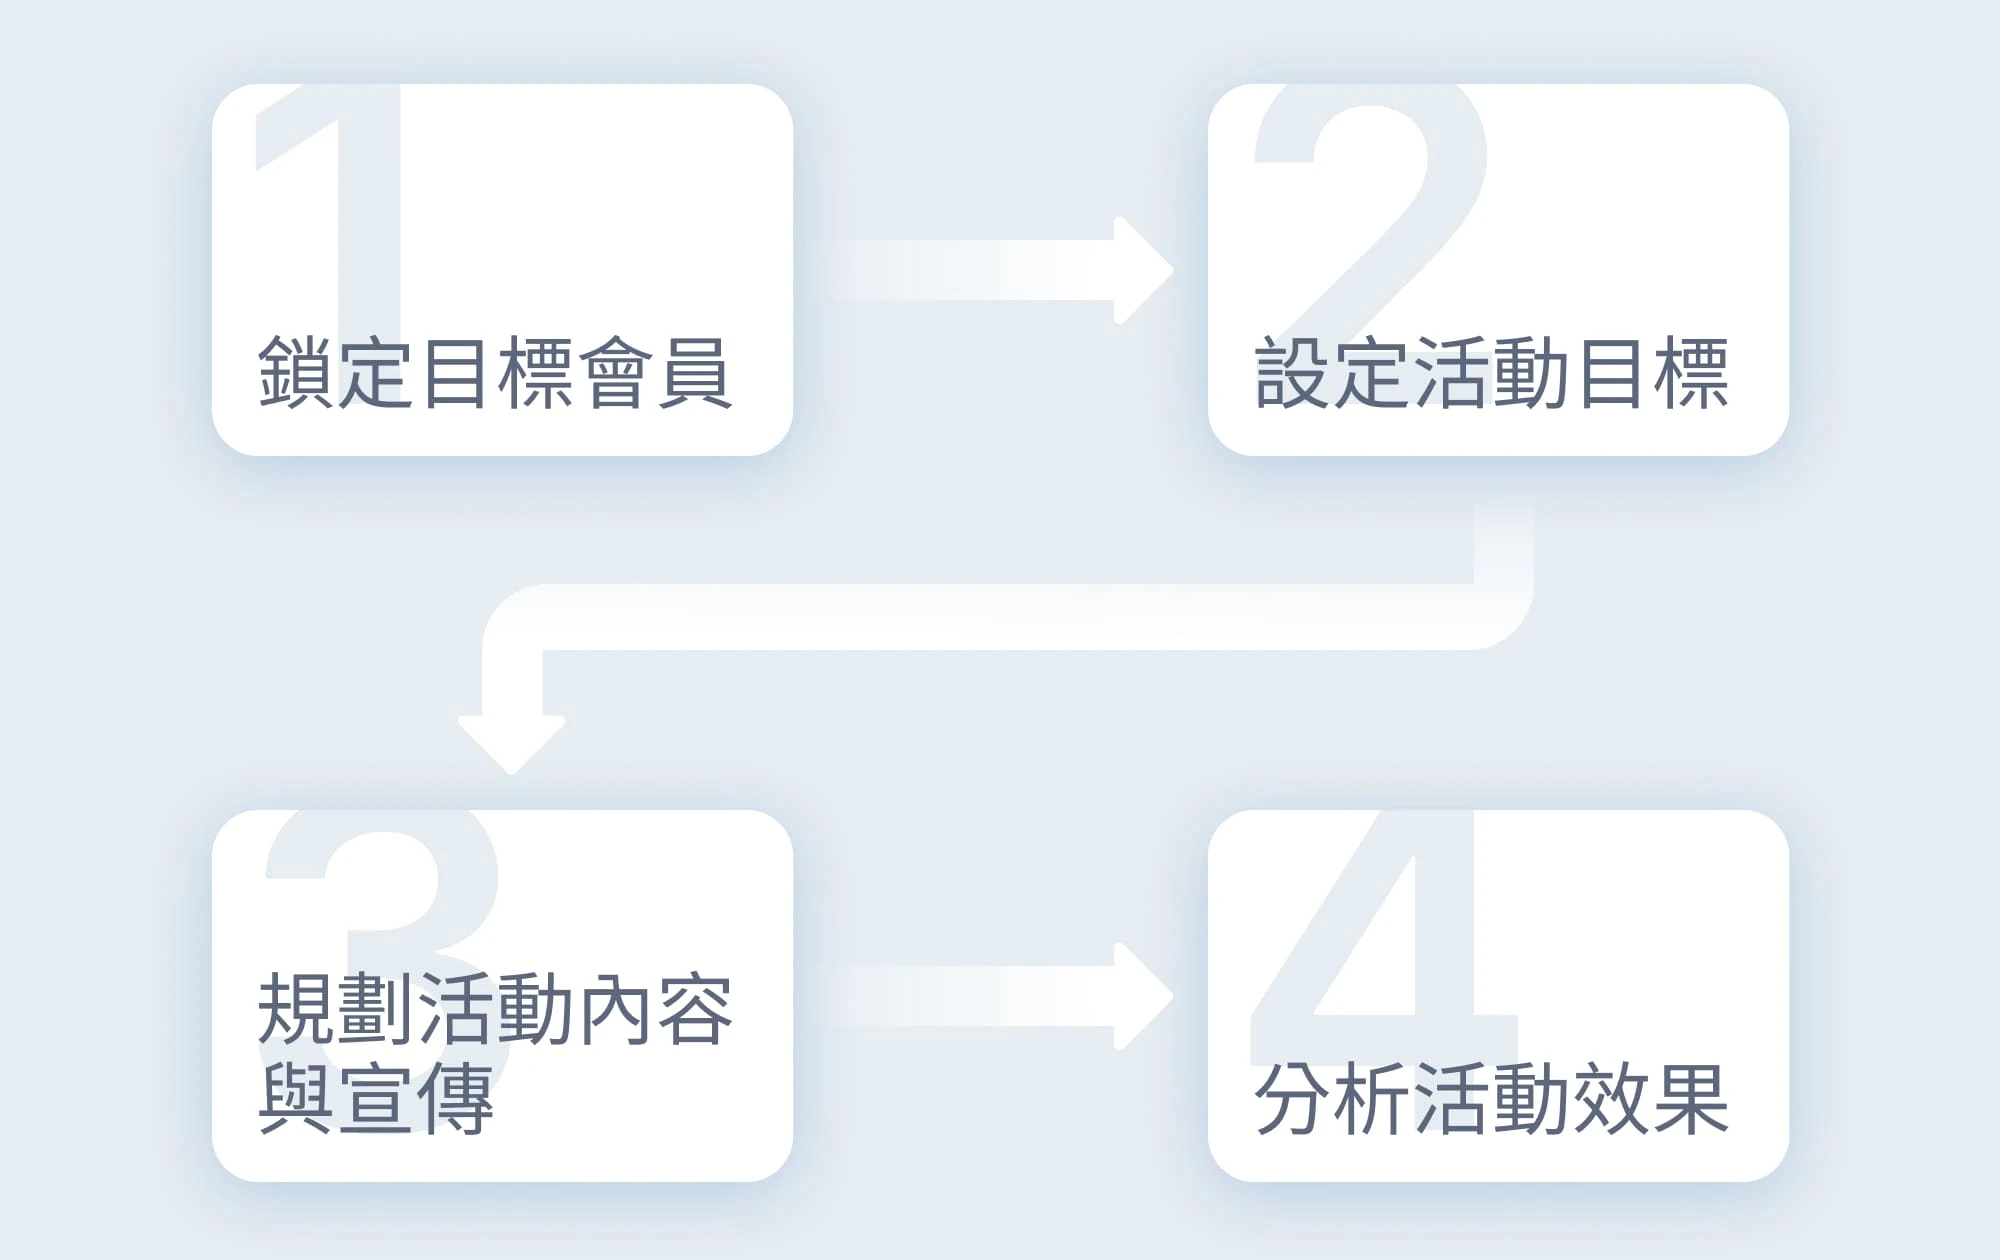 圖 2. 會員活動設計步驟